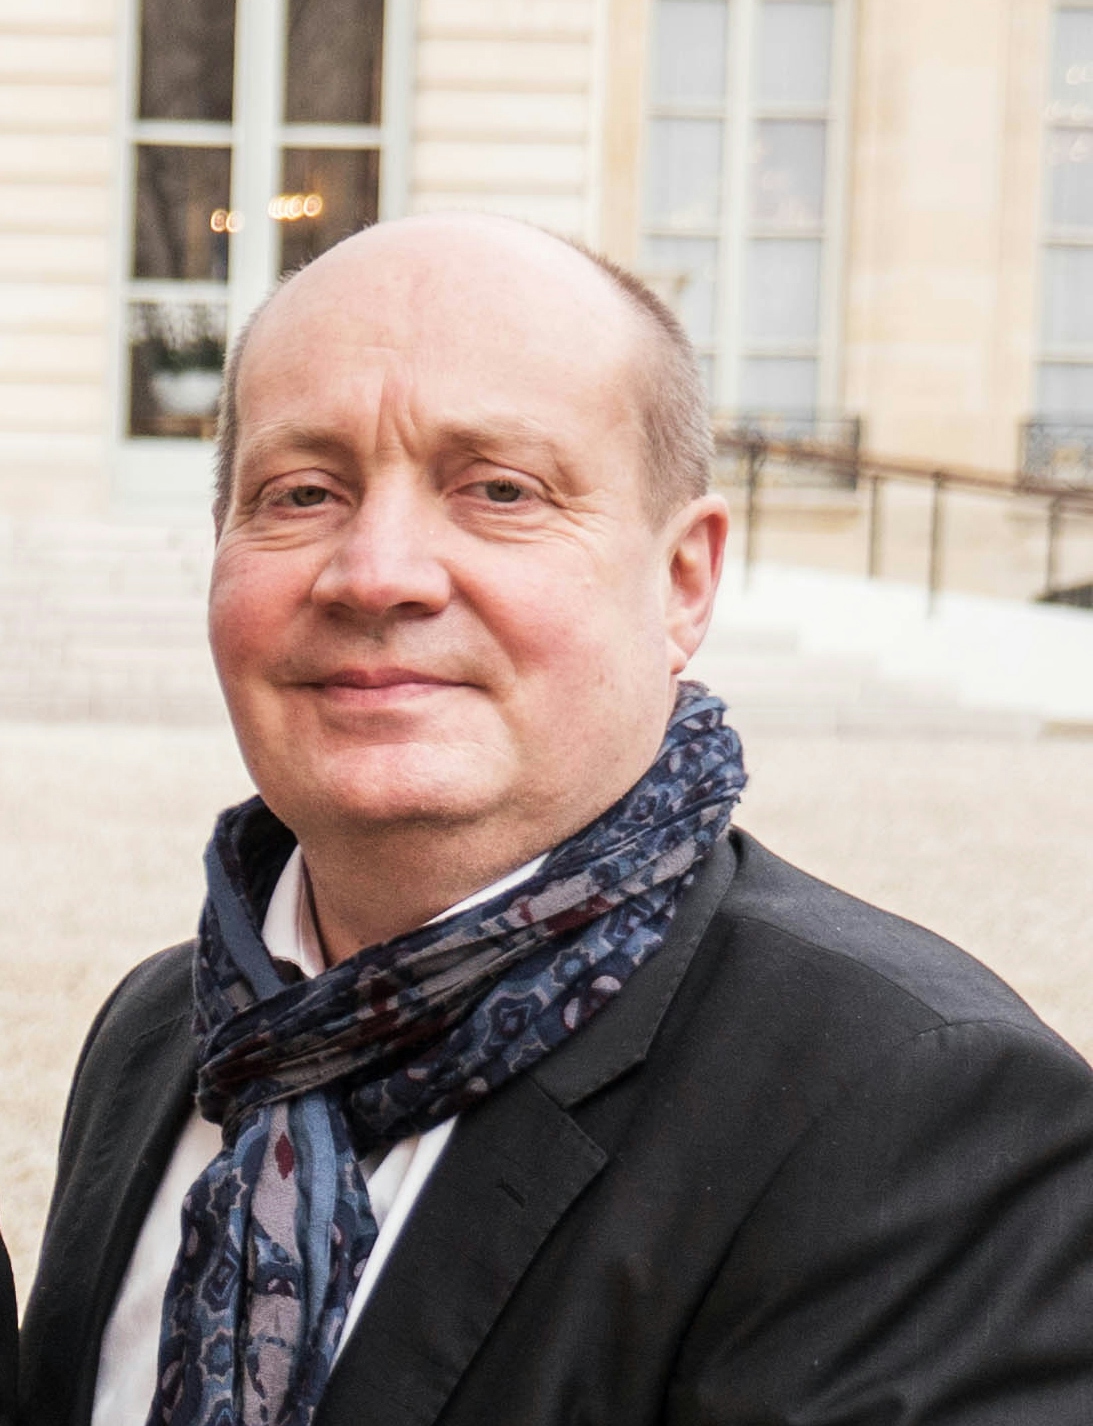 Interview with Pierre Creuzet, Director of the Centre-Ville en Mouvement association